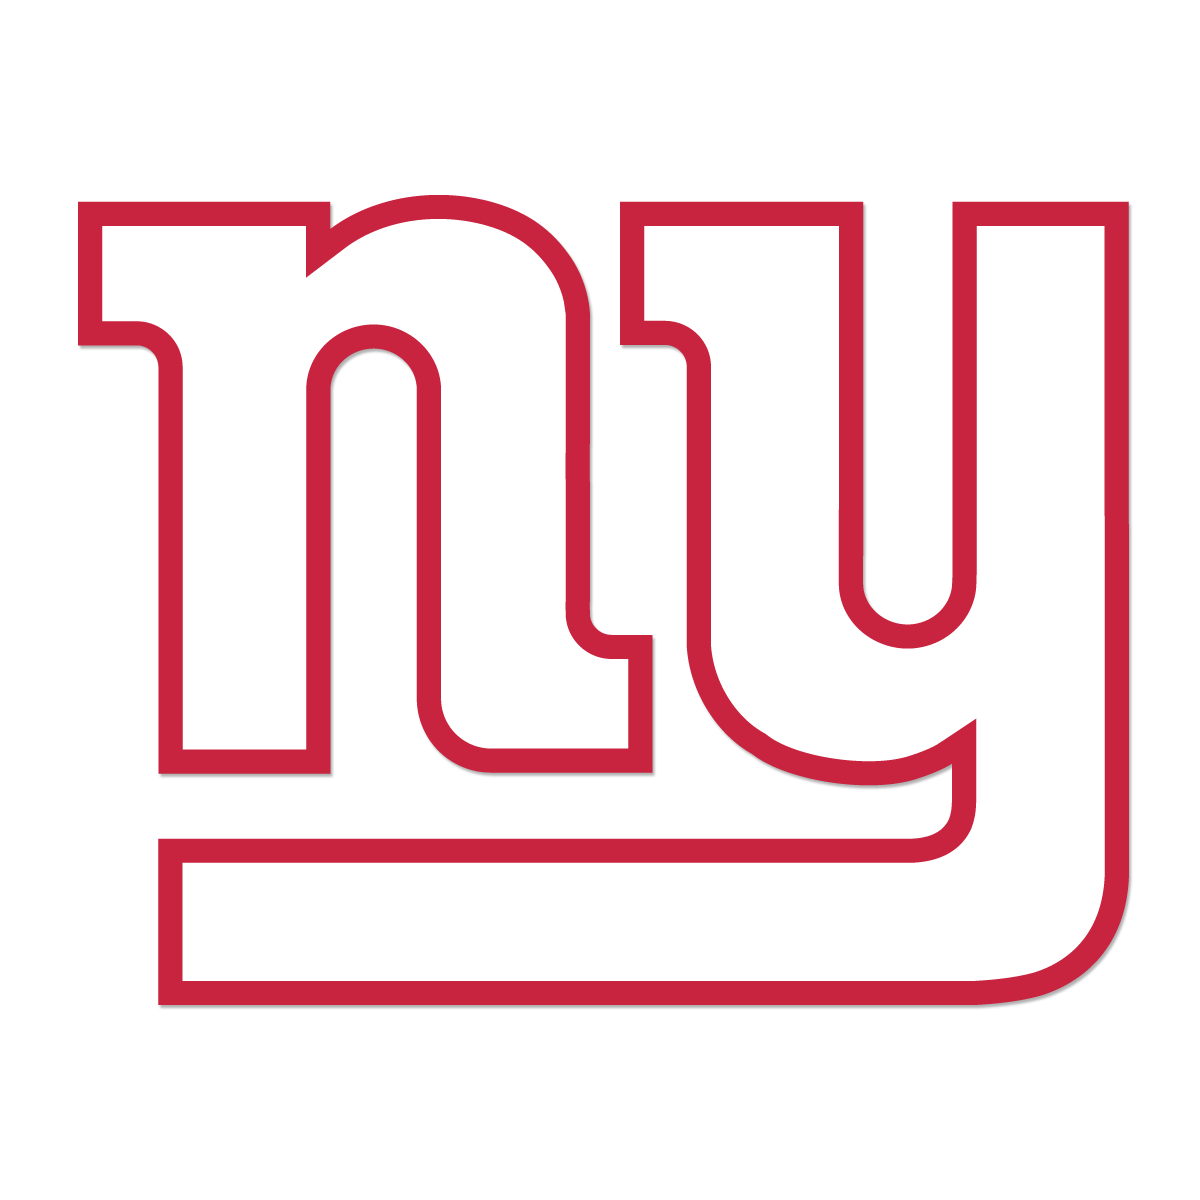 New York Giants Hd Wallpapers, Desktop Wallpaper - Logos And Uniforms Of The New York Giants - HD Wallpaper 